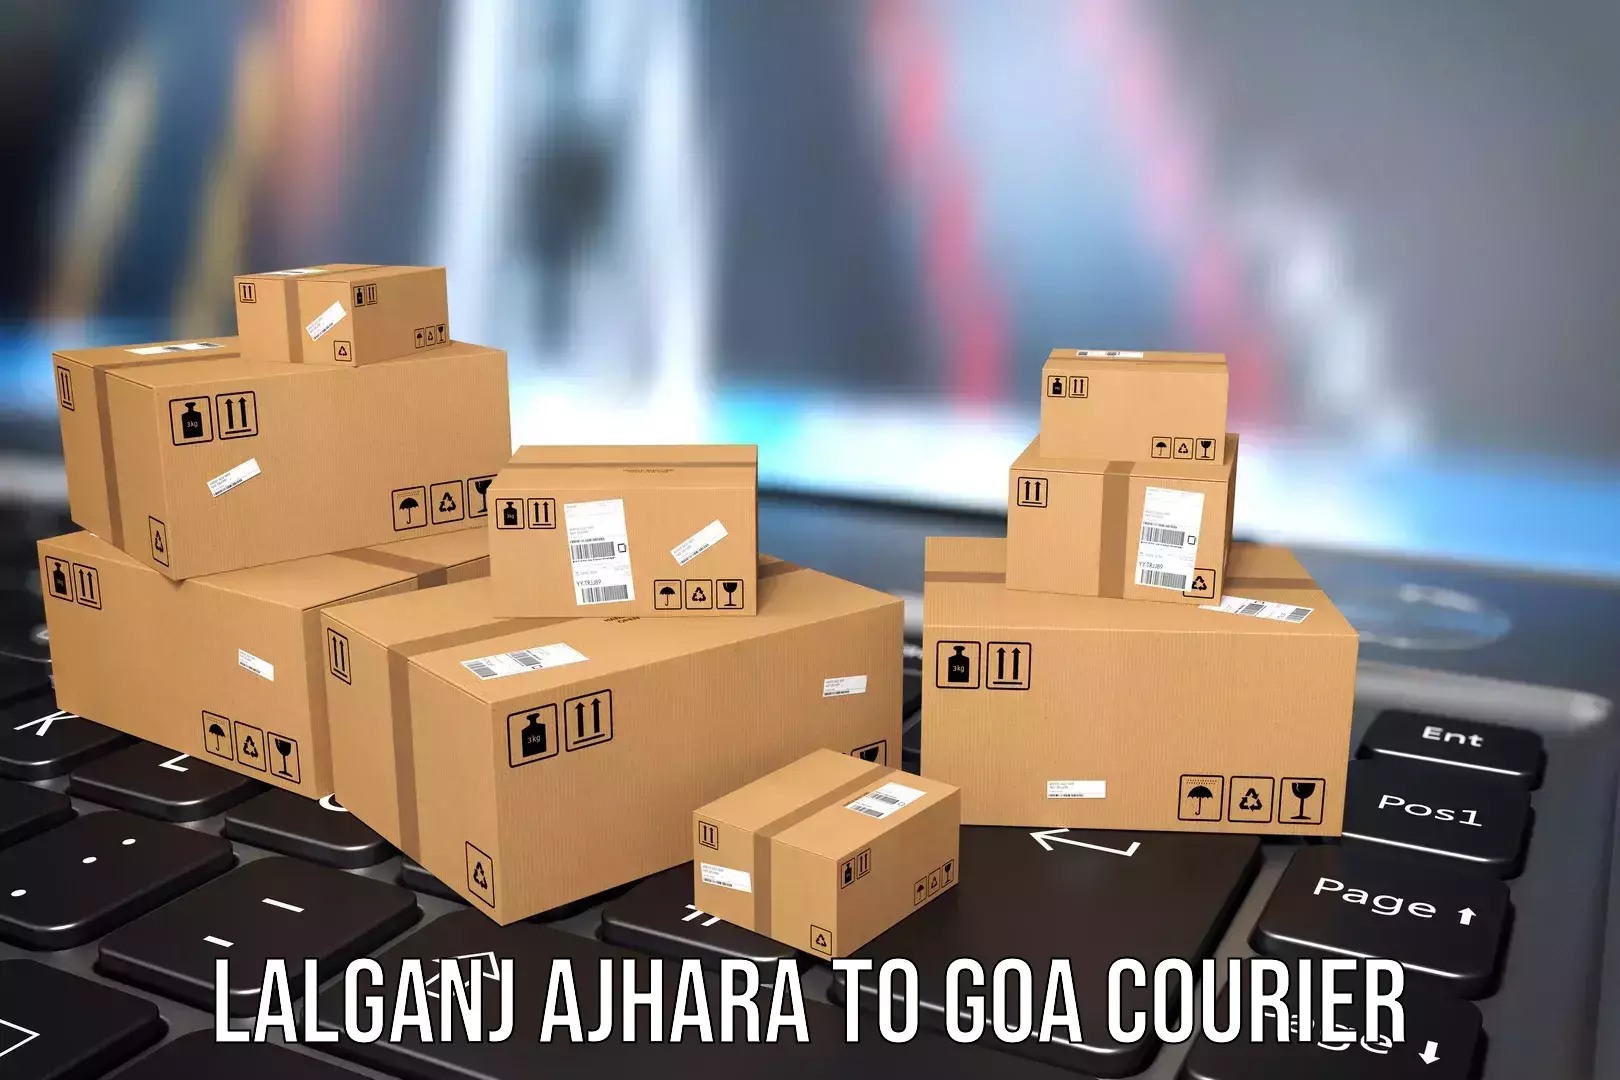 Weekend baggage shipping in Lalganj Ajhara to Goa